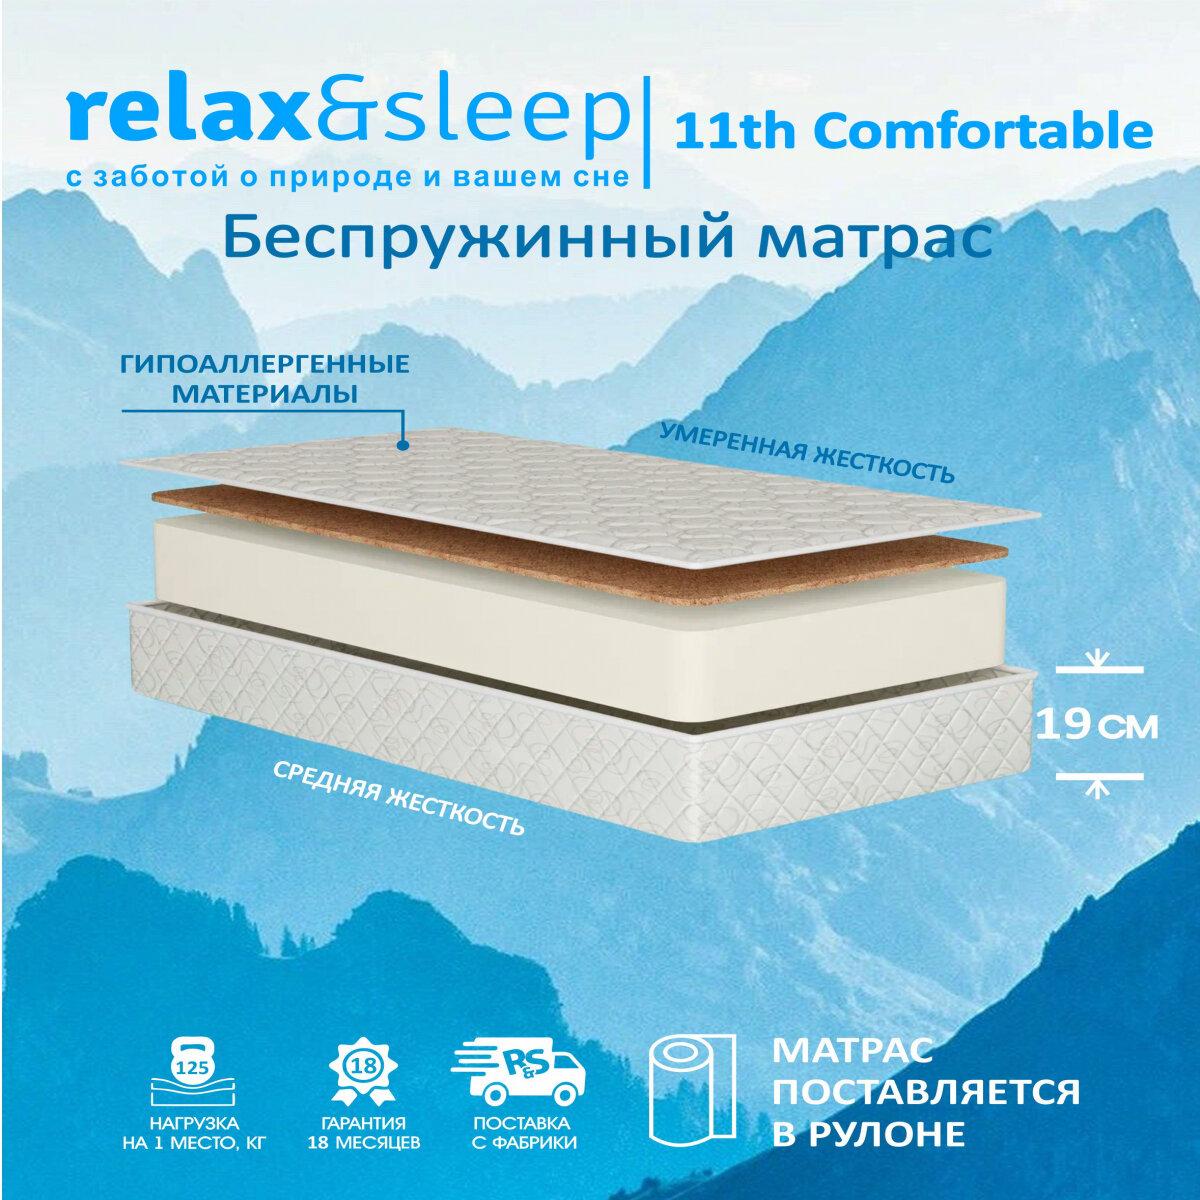 Матрас Relax&Sleep ортопедический беспружинный 11h Comfortable (60 / 195)